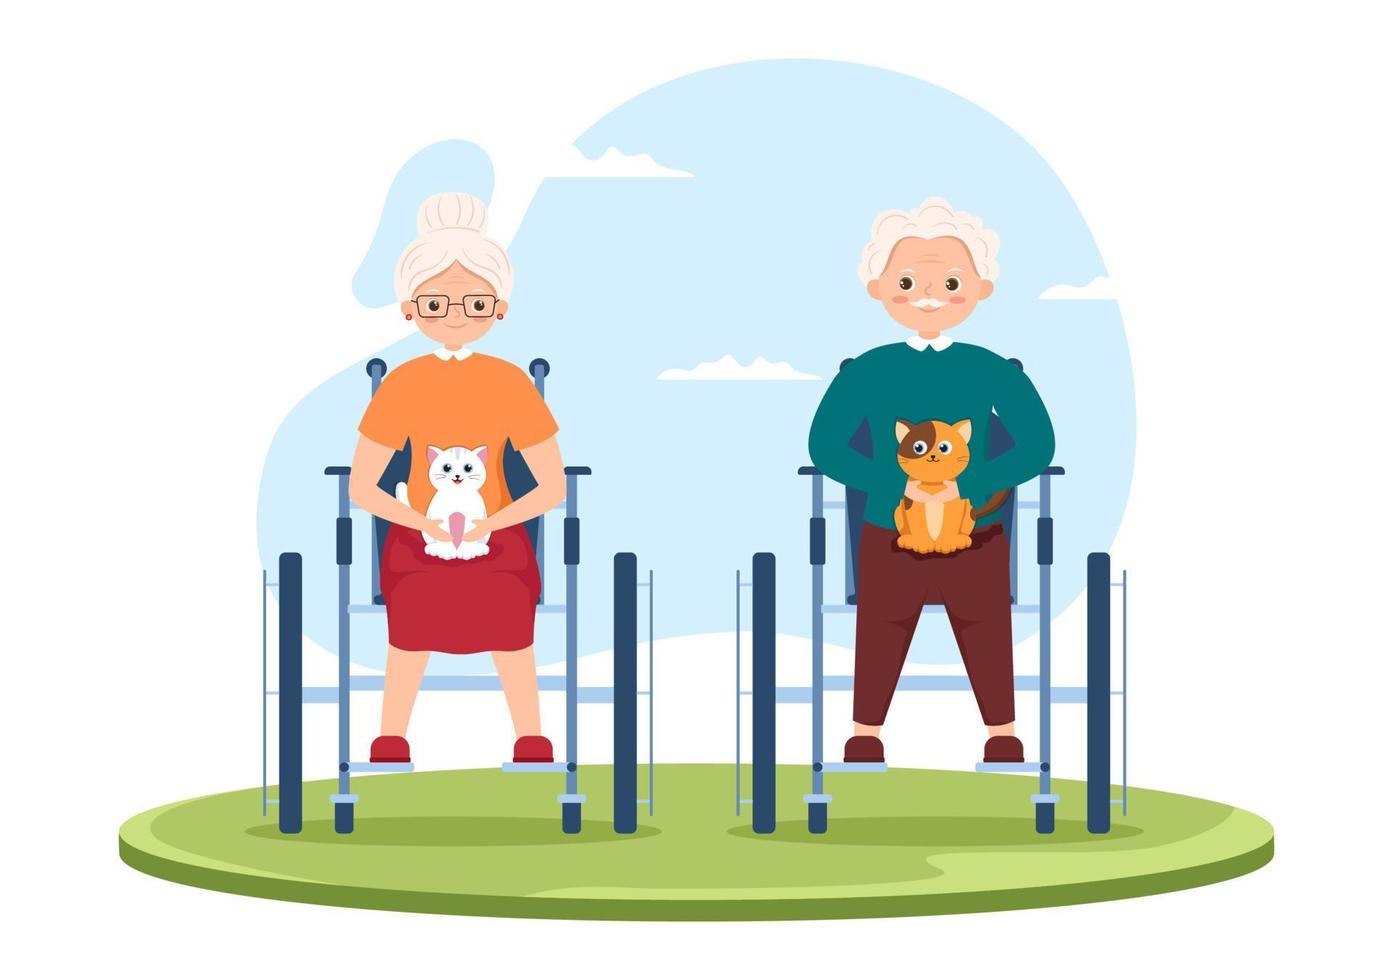 ältere pflegedienste handgezeichnete flache illustration der karikatur mit pflegekraft, pflegeheim, betreutem leben und unterstützungsdesign vektor